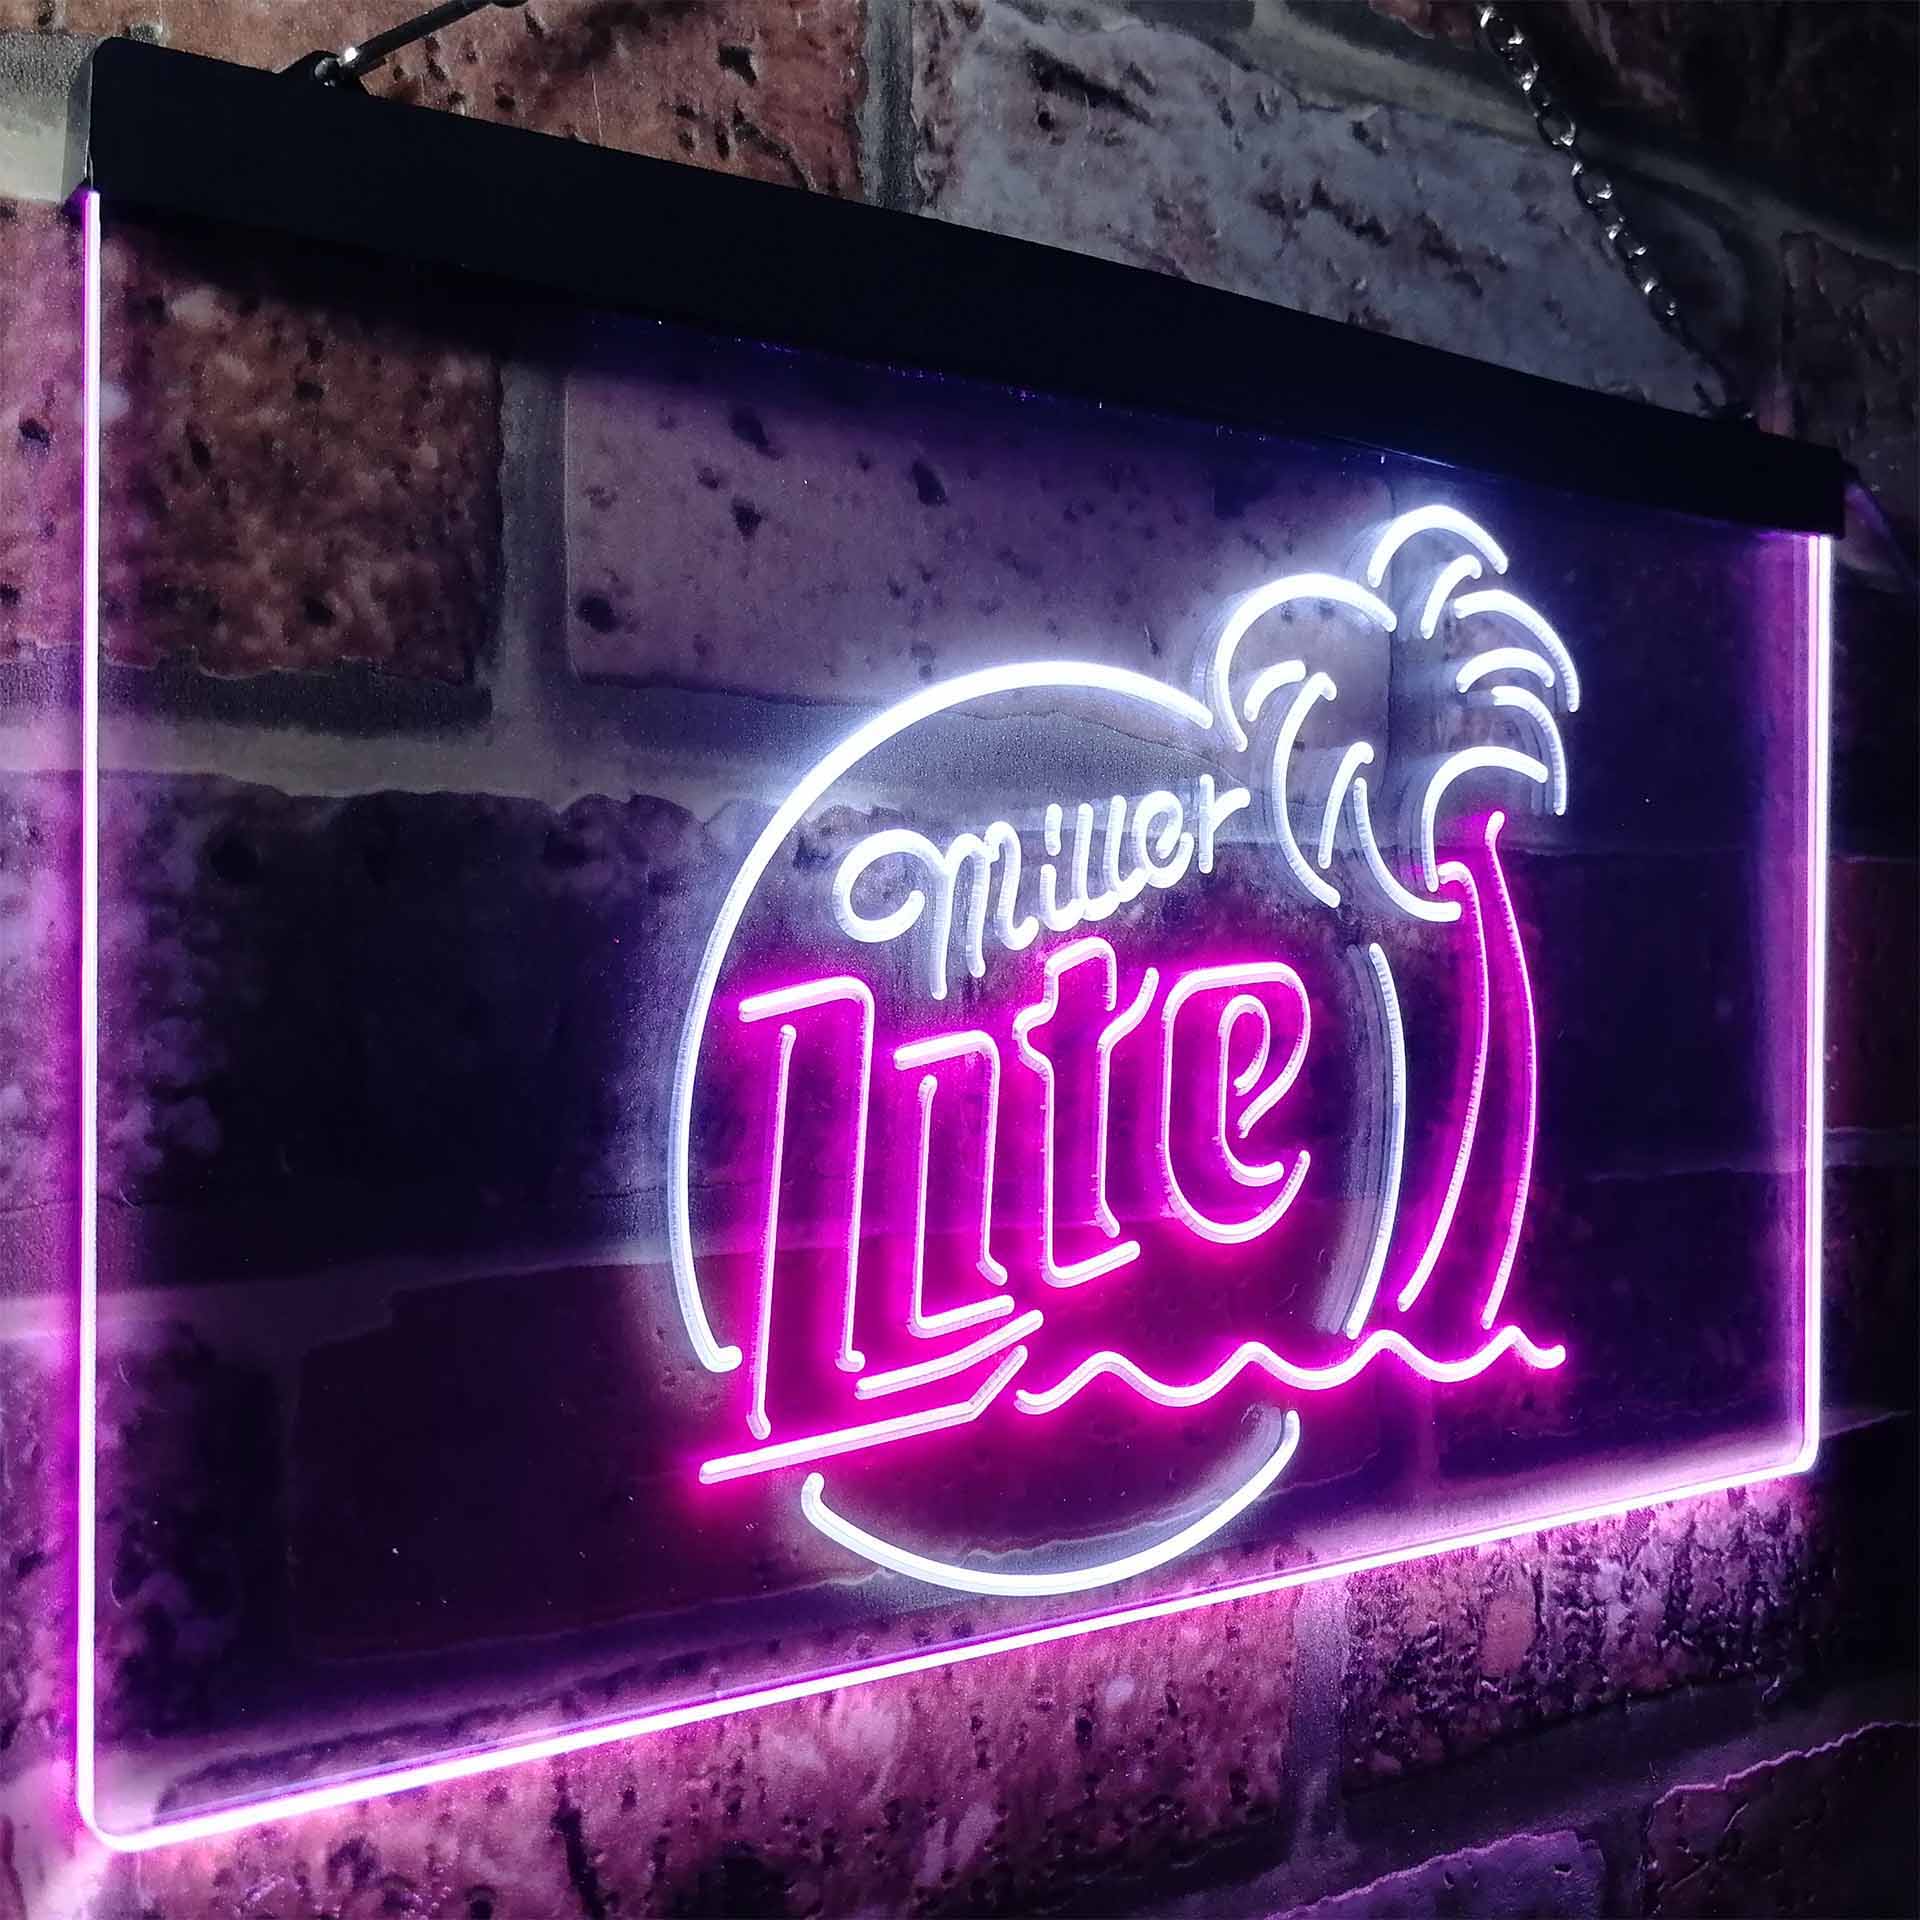 Miller Lite Palm Tree Beer Bar Neon LED Sign